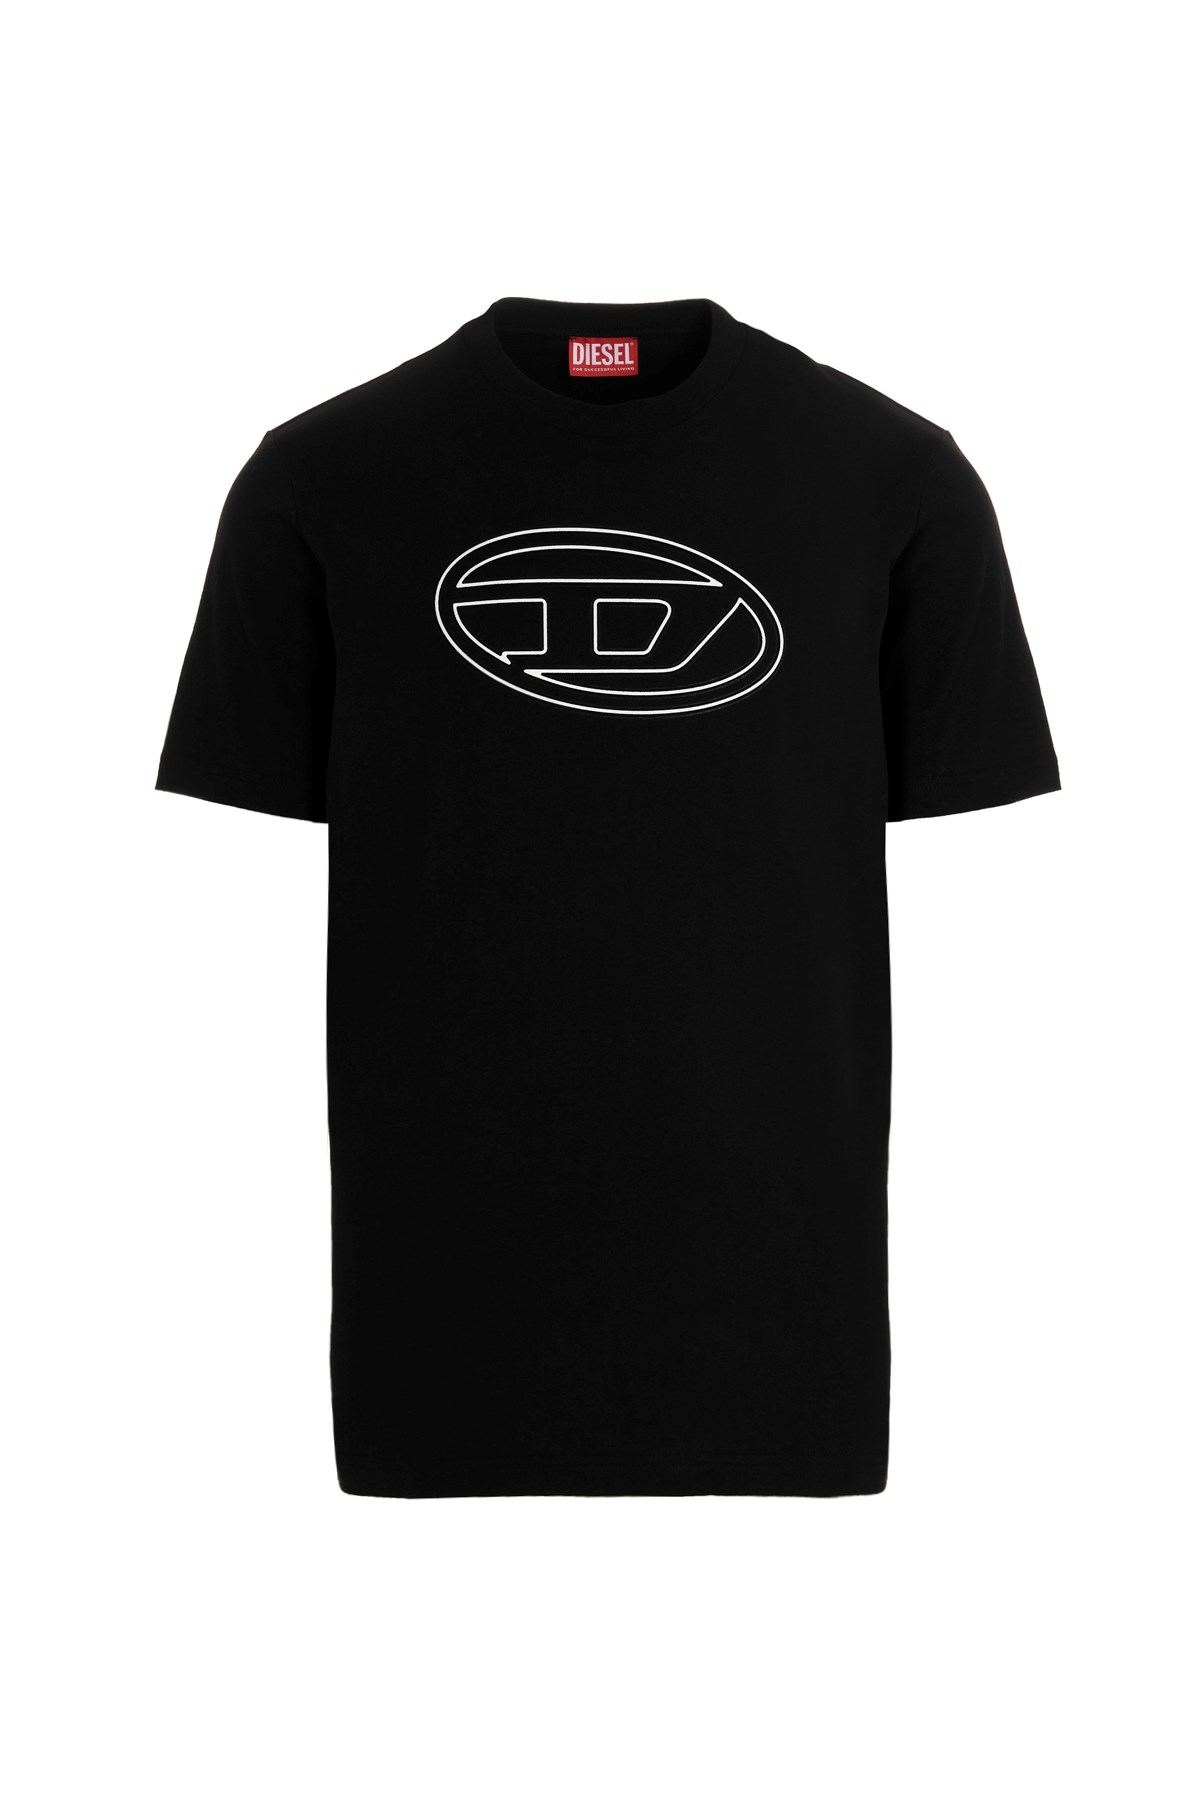 DIESEL T-Shirt Mit Geprägtem Logo